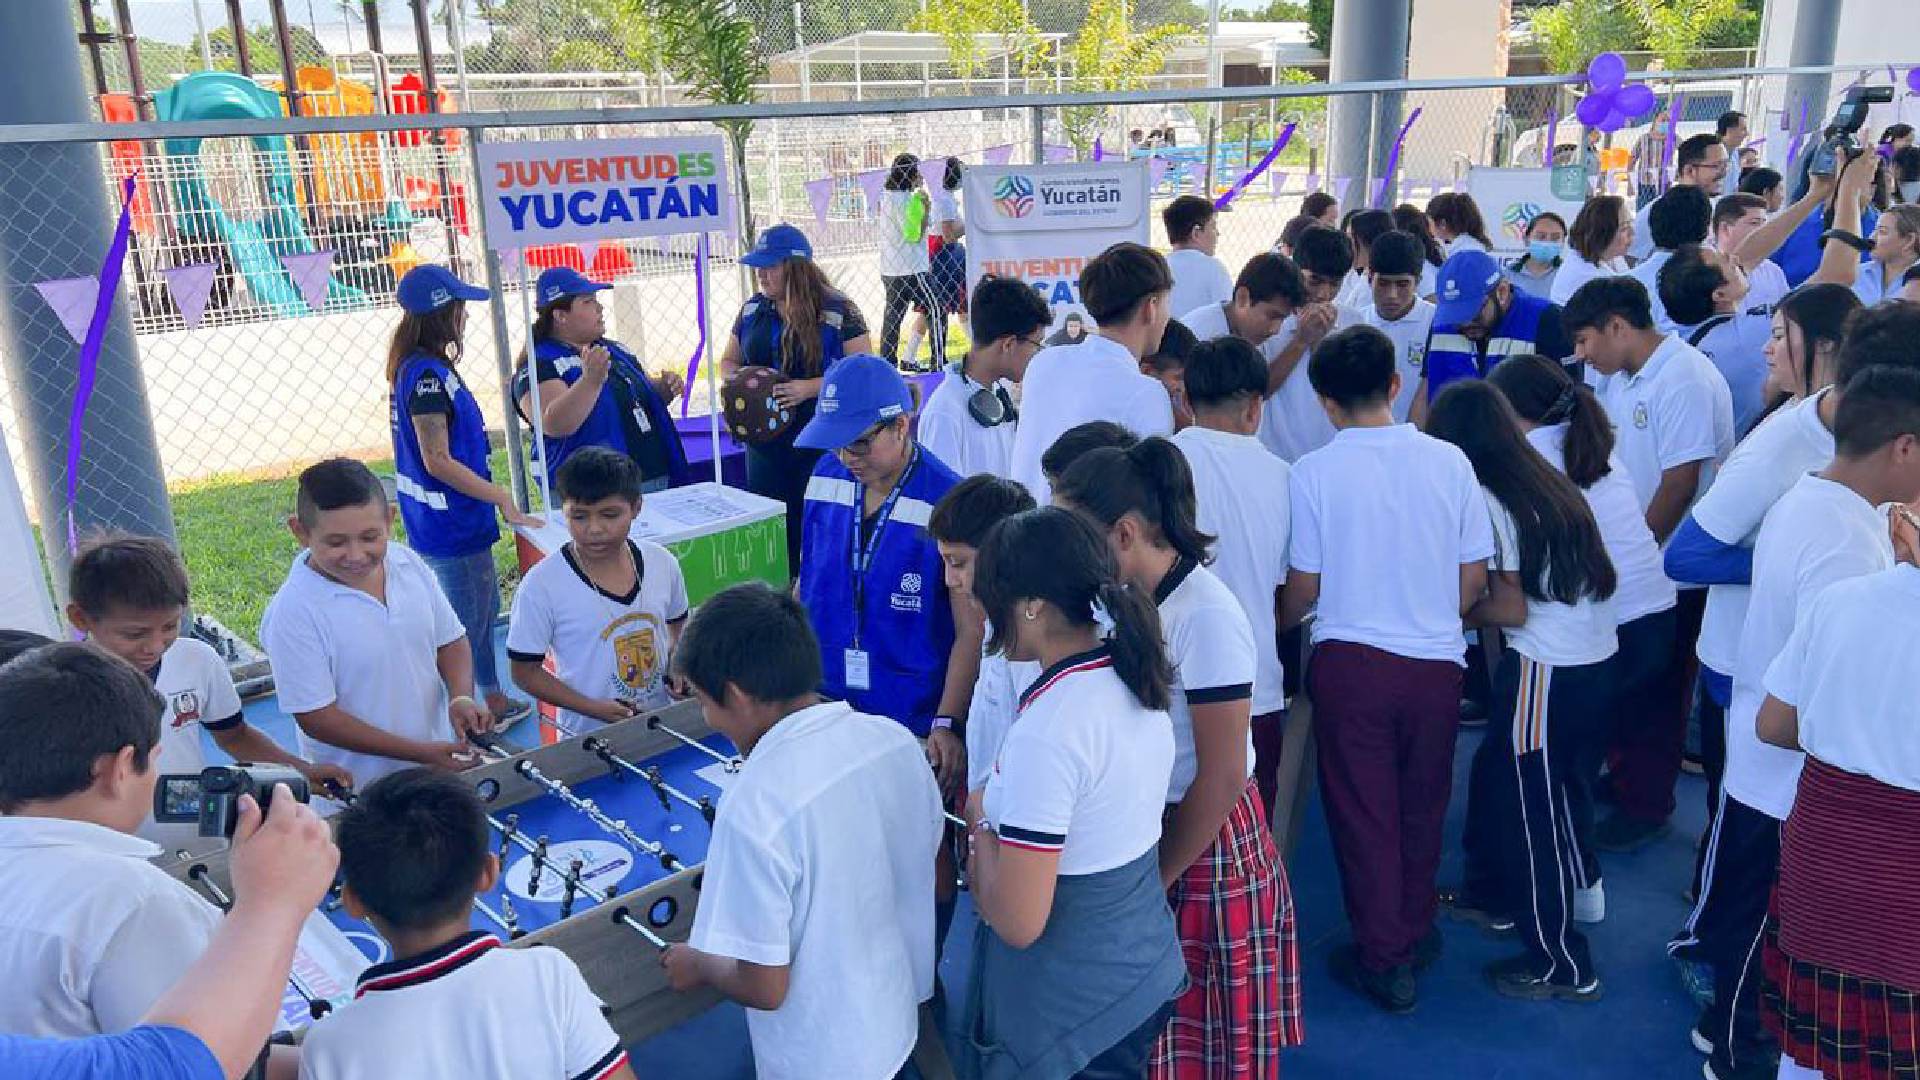 Plan Estatal “Juventudes Yucatán” para prevenir adicciones con actividades culturales, deportivas y familiares, llega a 14 municipios del estado.